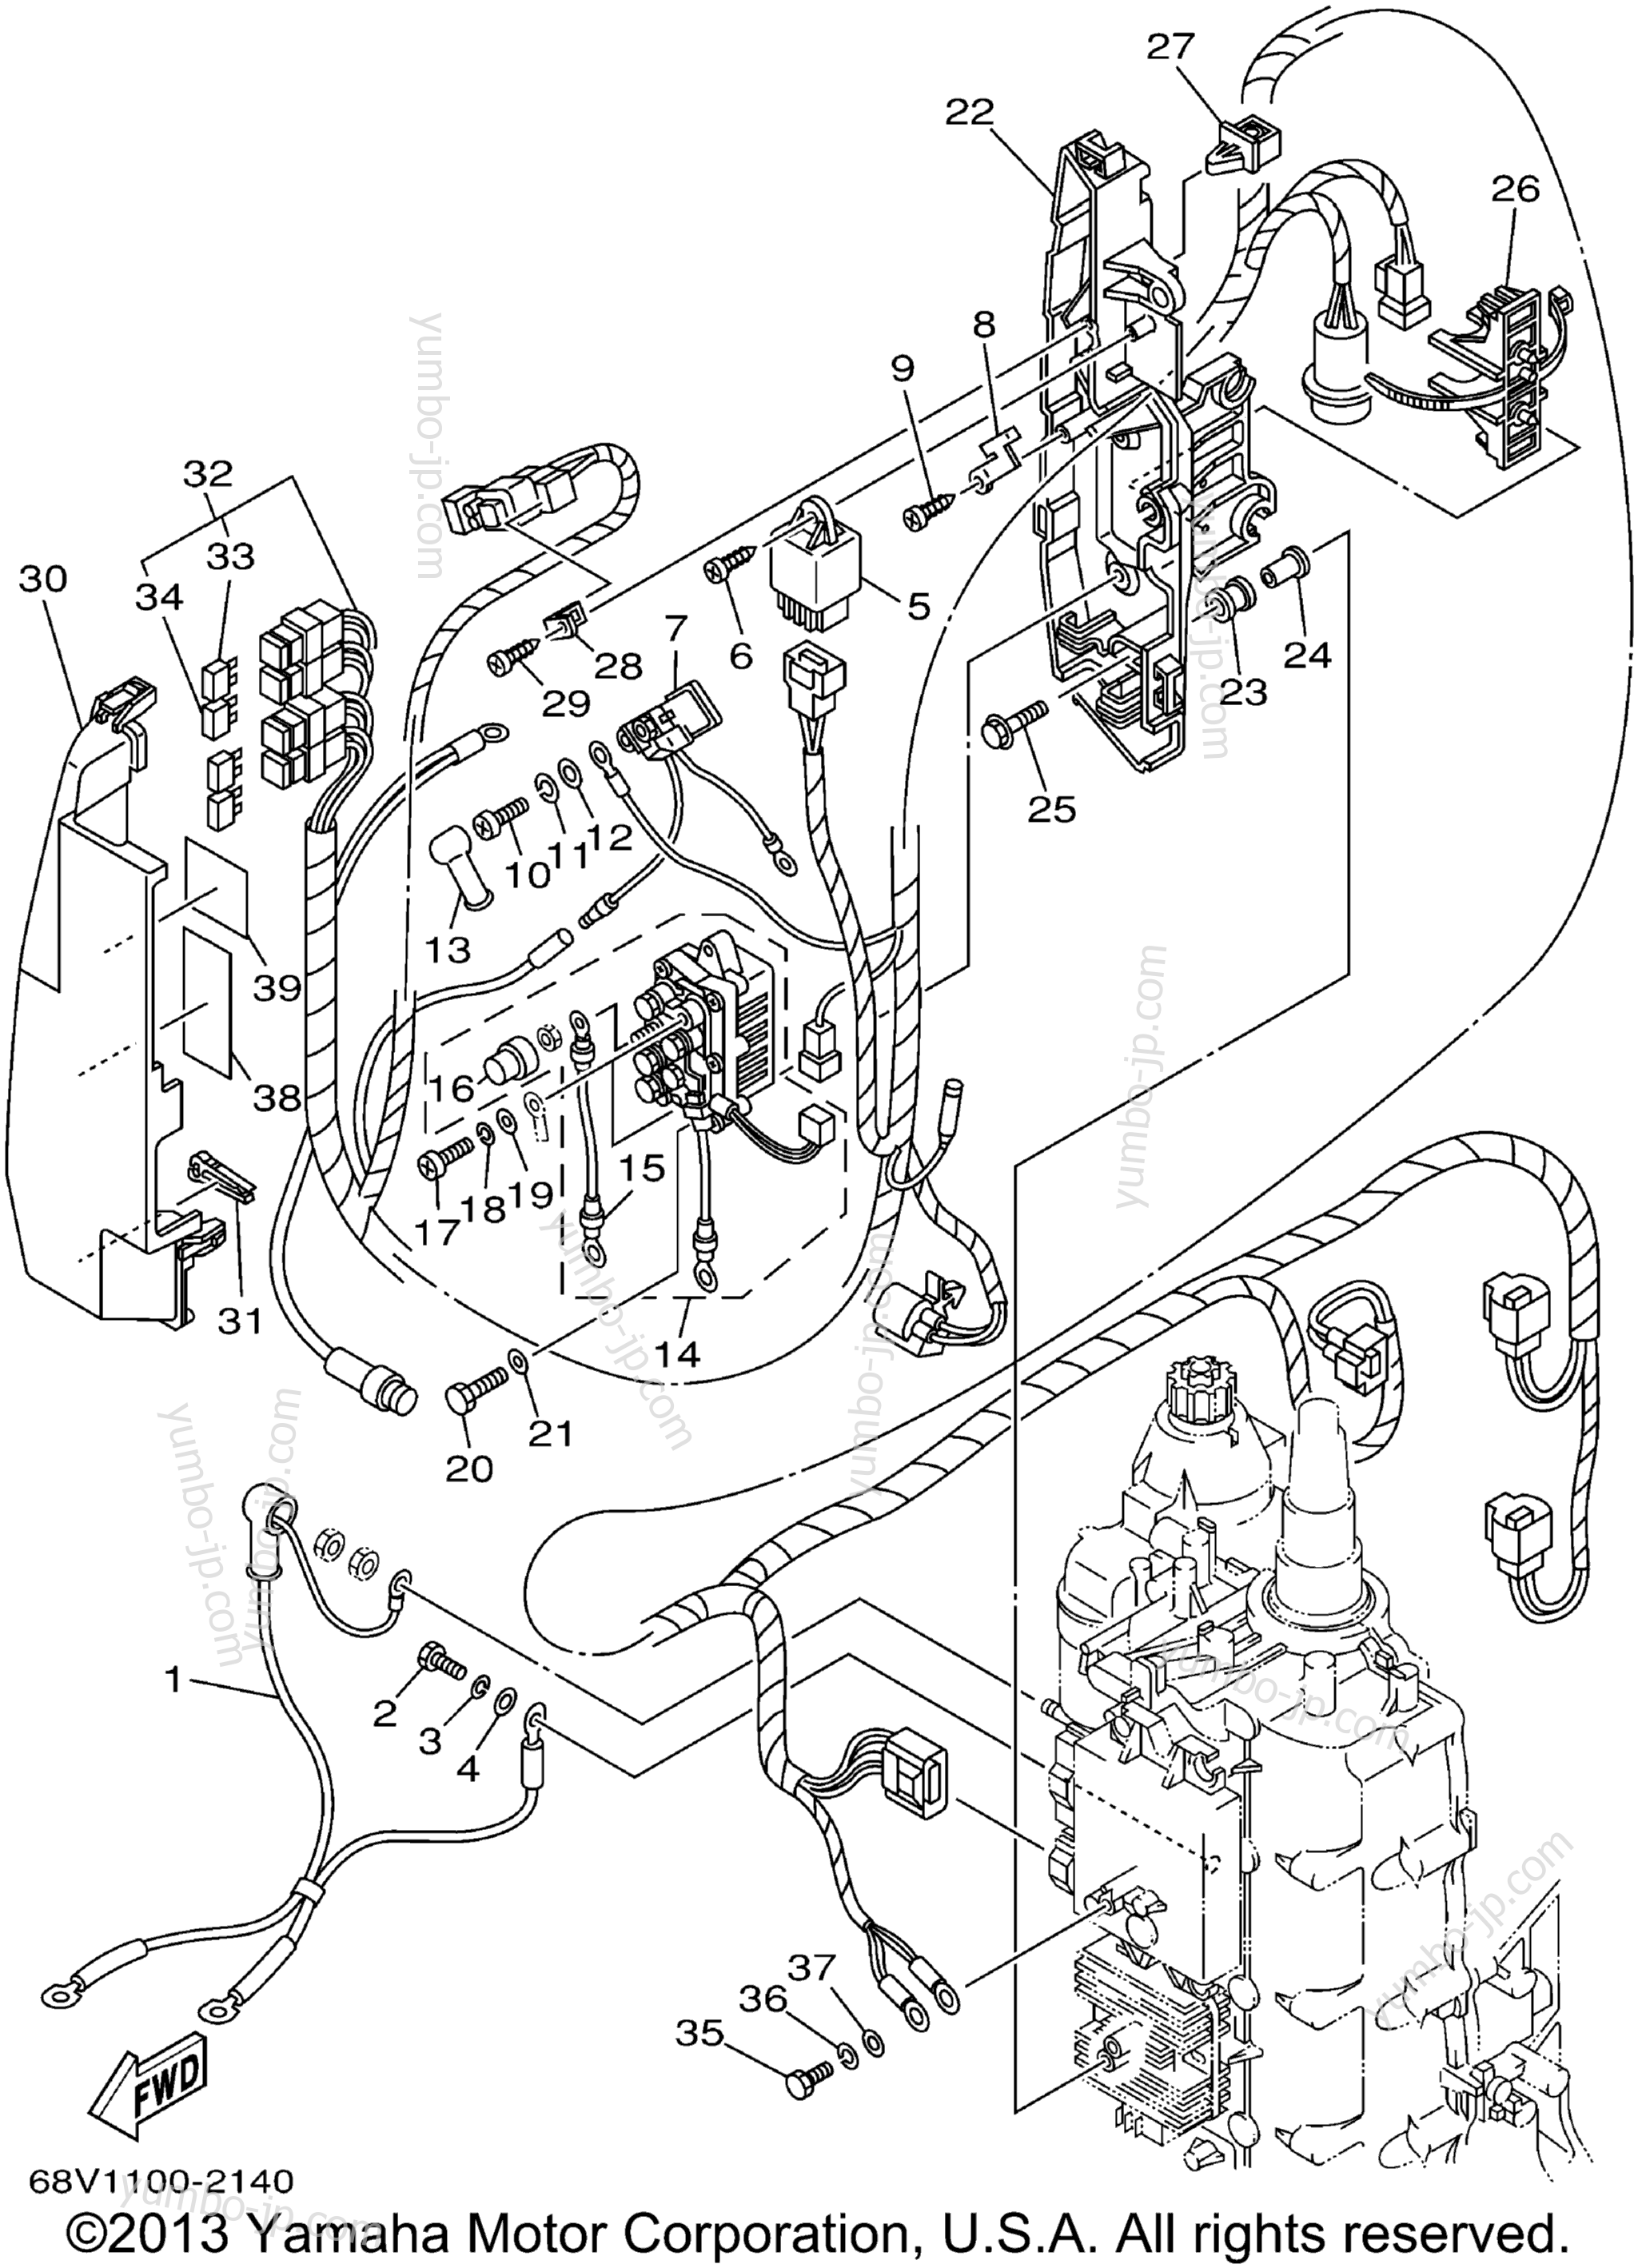 Electrical 2 для лодочных моторов YAMAHA LF115TXRA 2002 г.